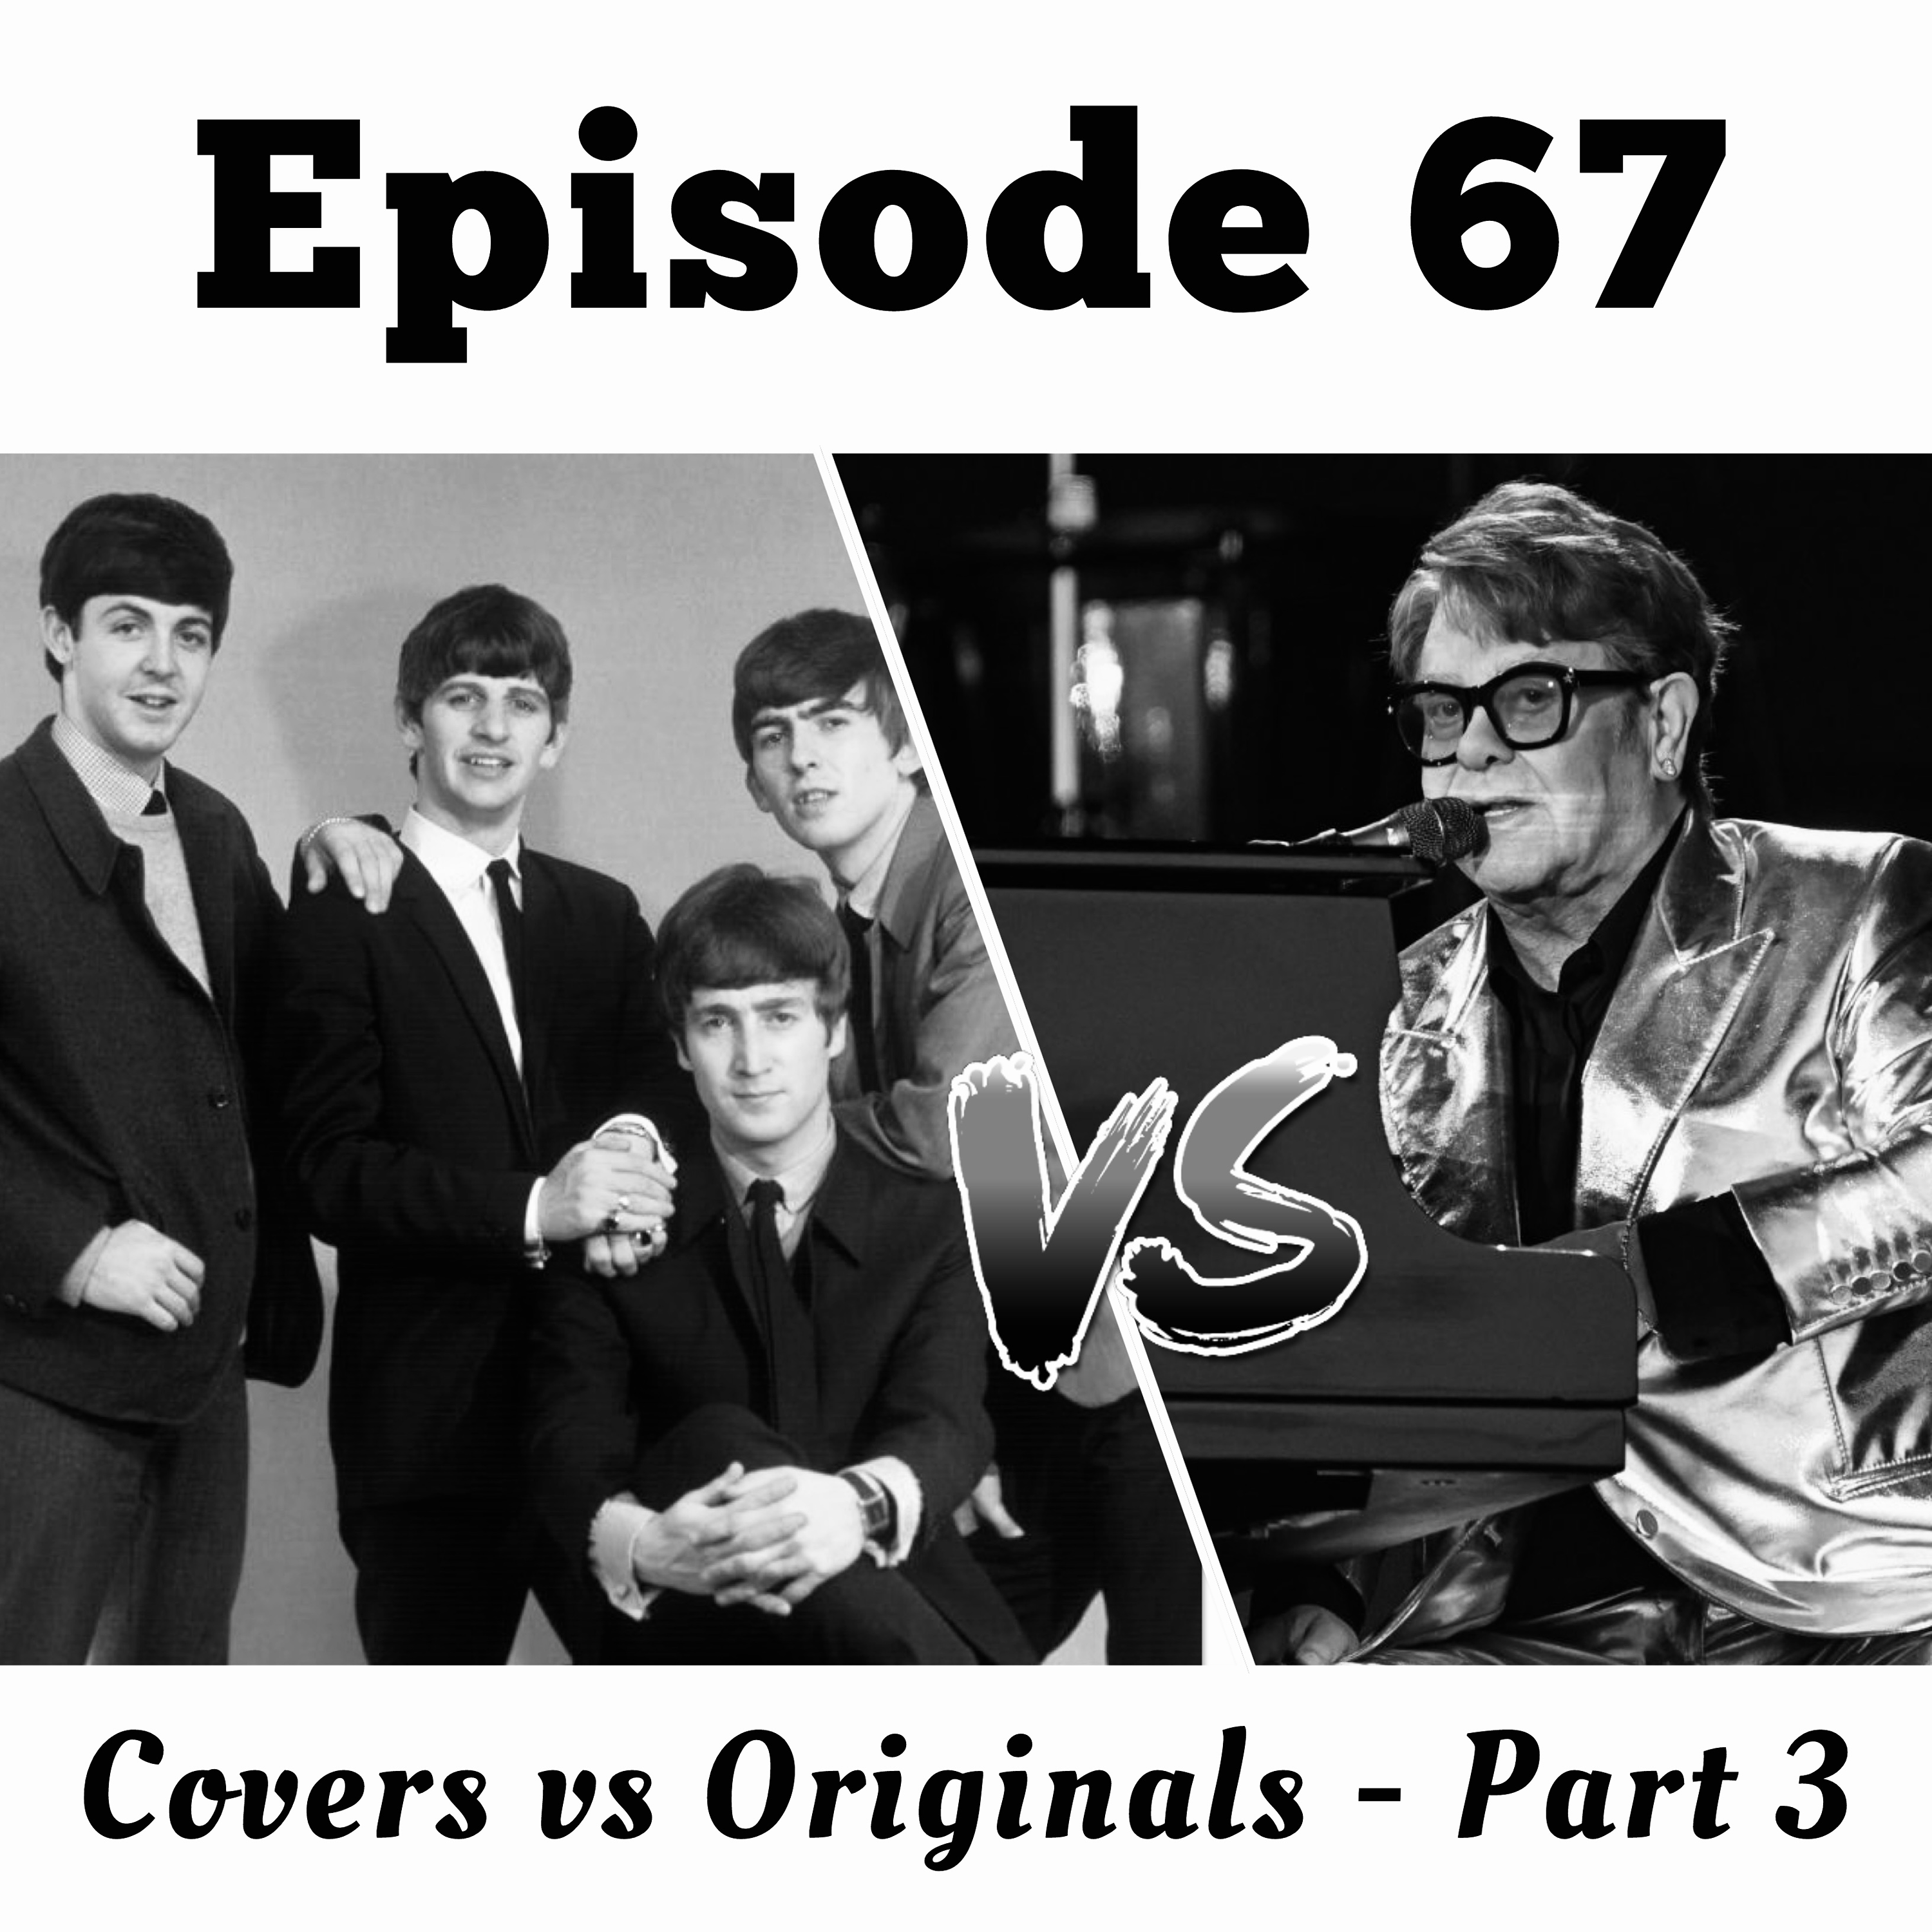 67. Covers vs Originals - Part 3